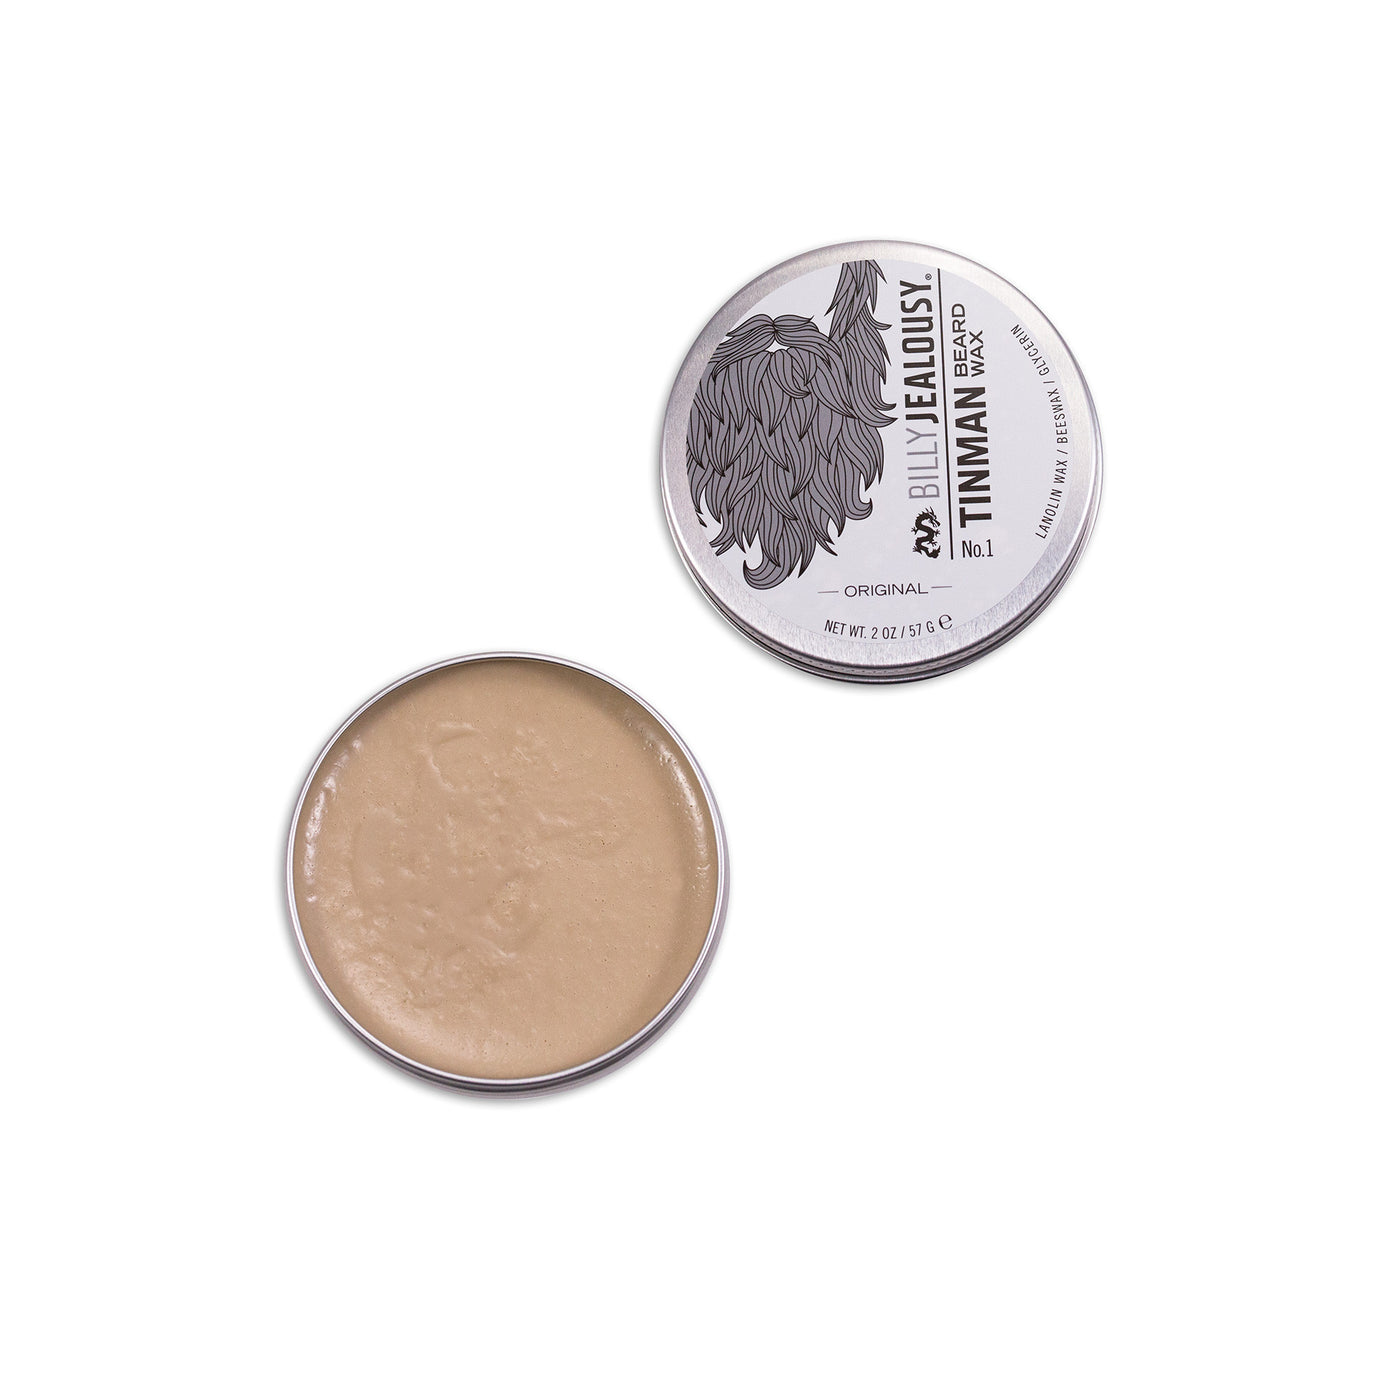 (Product image): open 2oz aluminum tin of Tin Man beard wax.